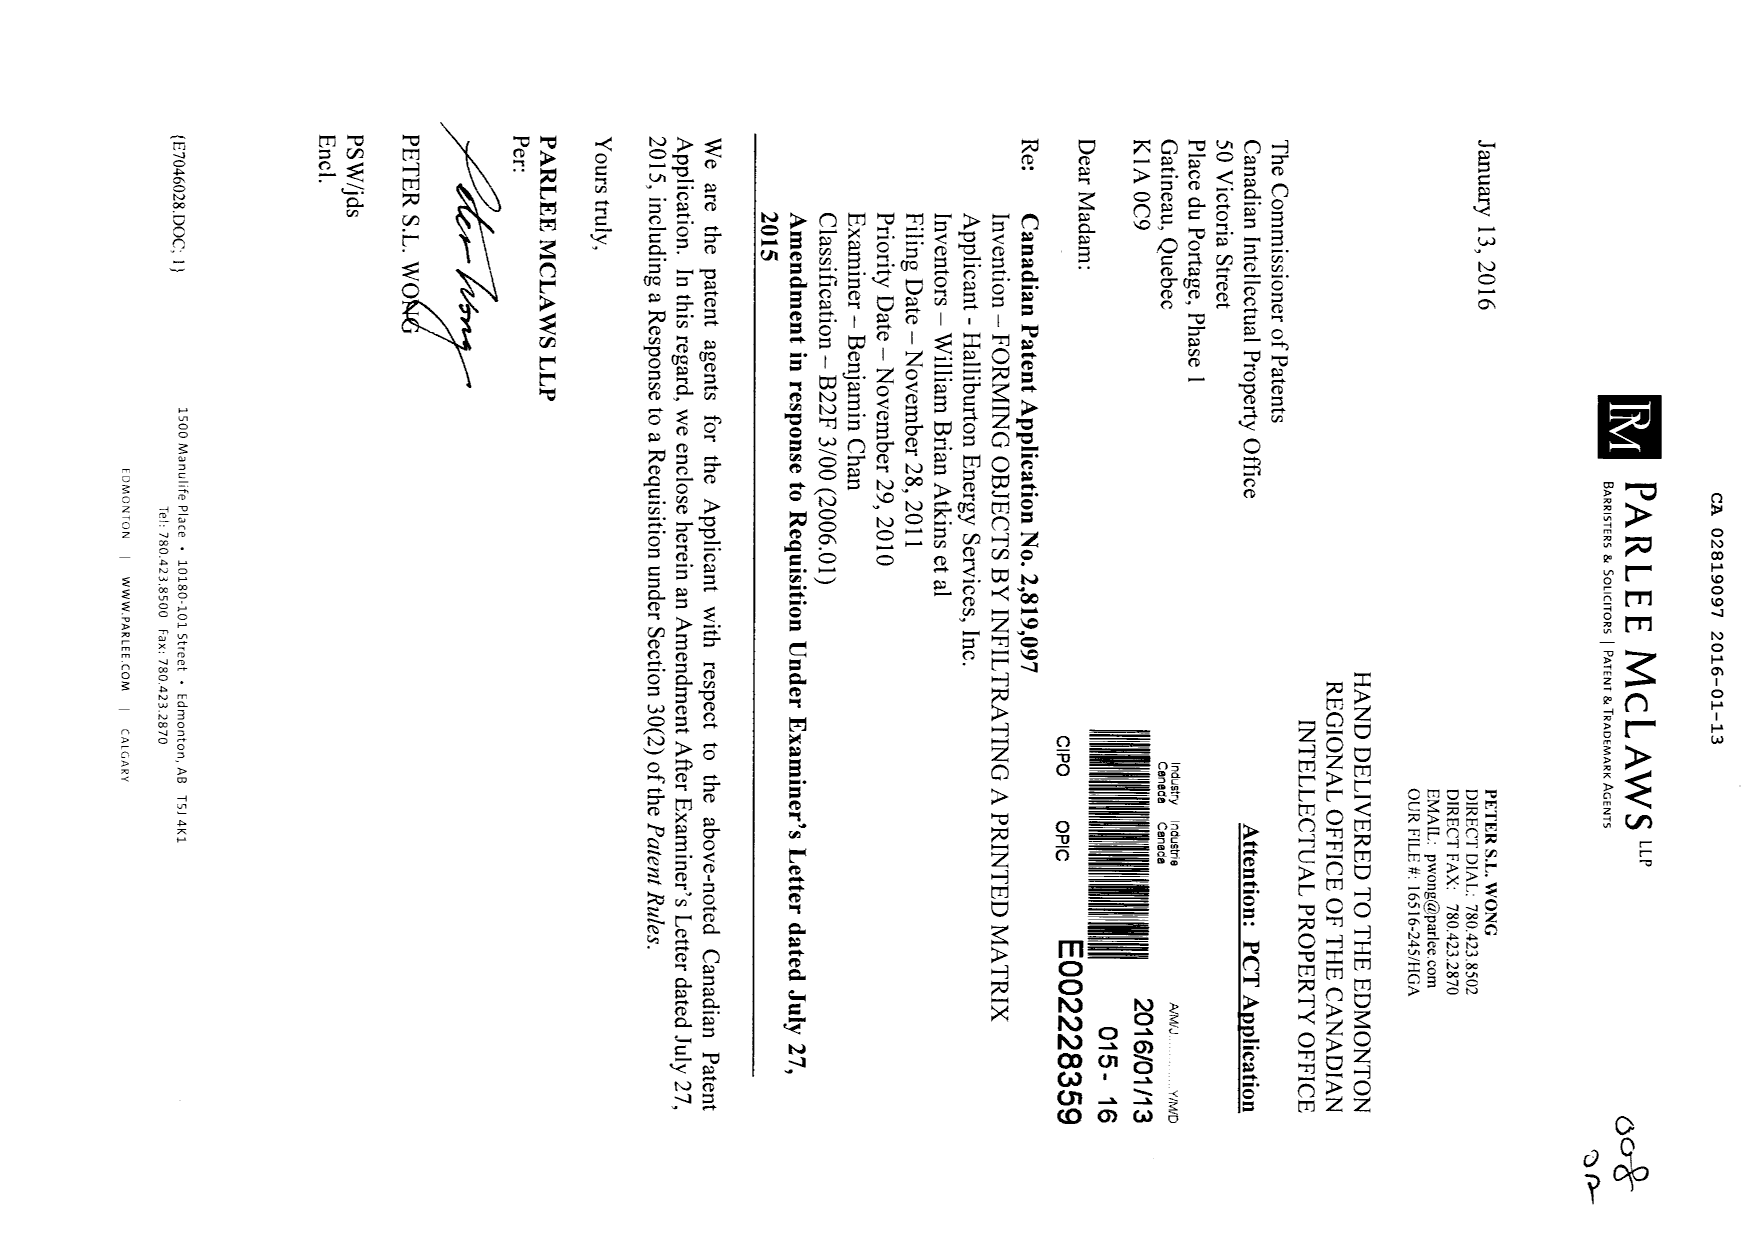 Document de brevet canadien 2819097. Poursuite-Amendment 20151213. Image 1 de 22